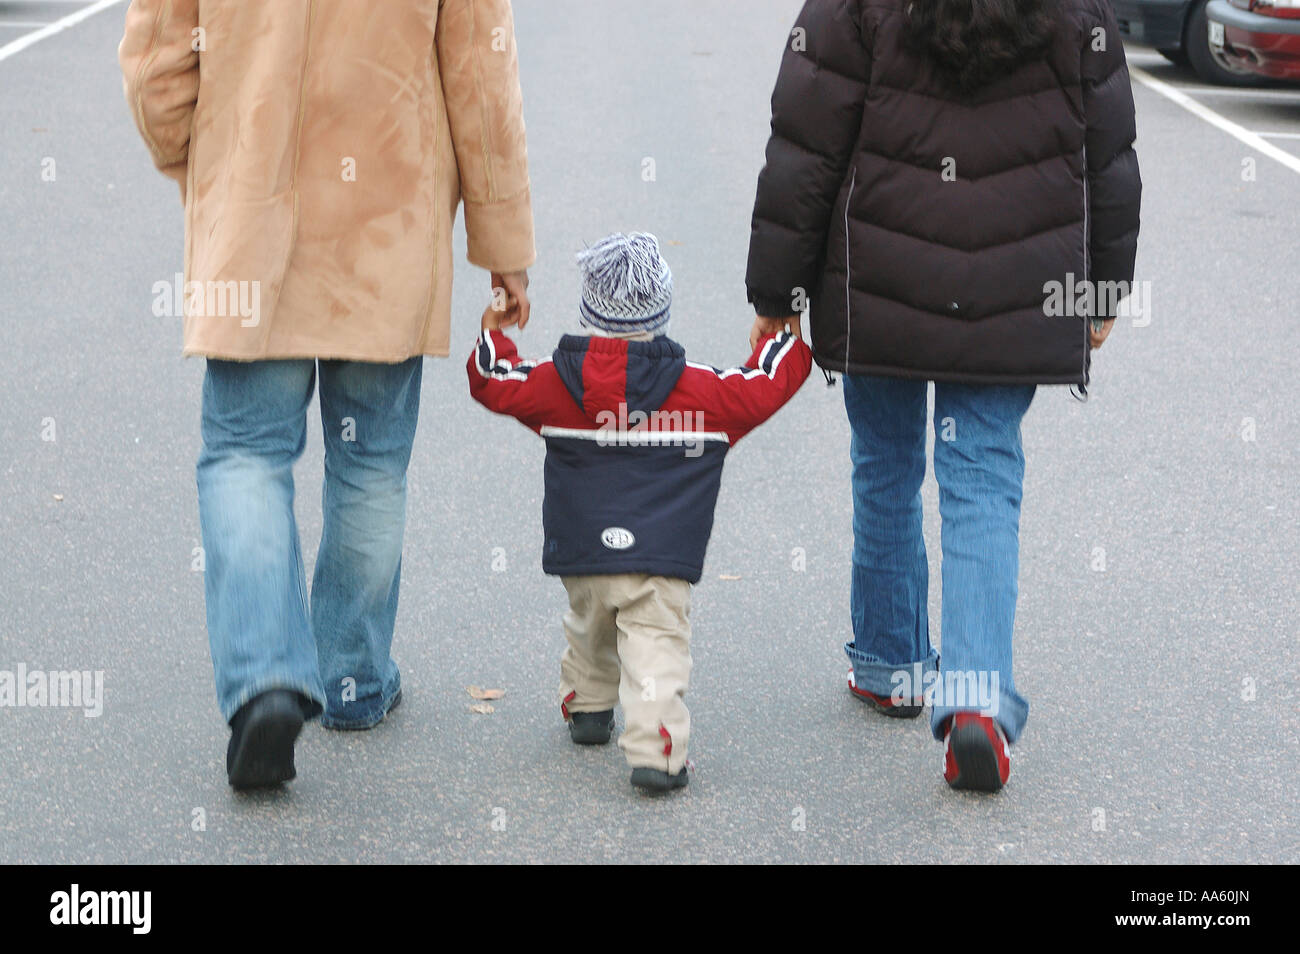 ANG104130 famille indienne père mère fils marchant sur la rue Suède modèle libération 468 Banque D'Images